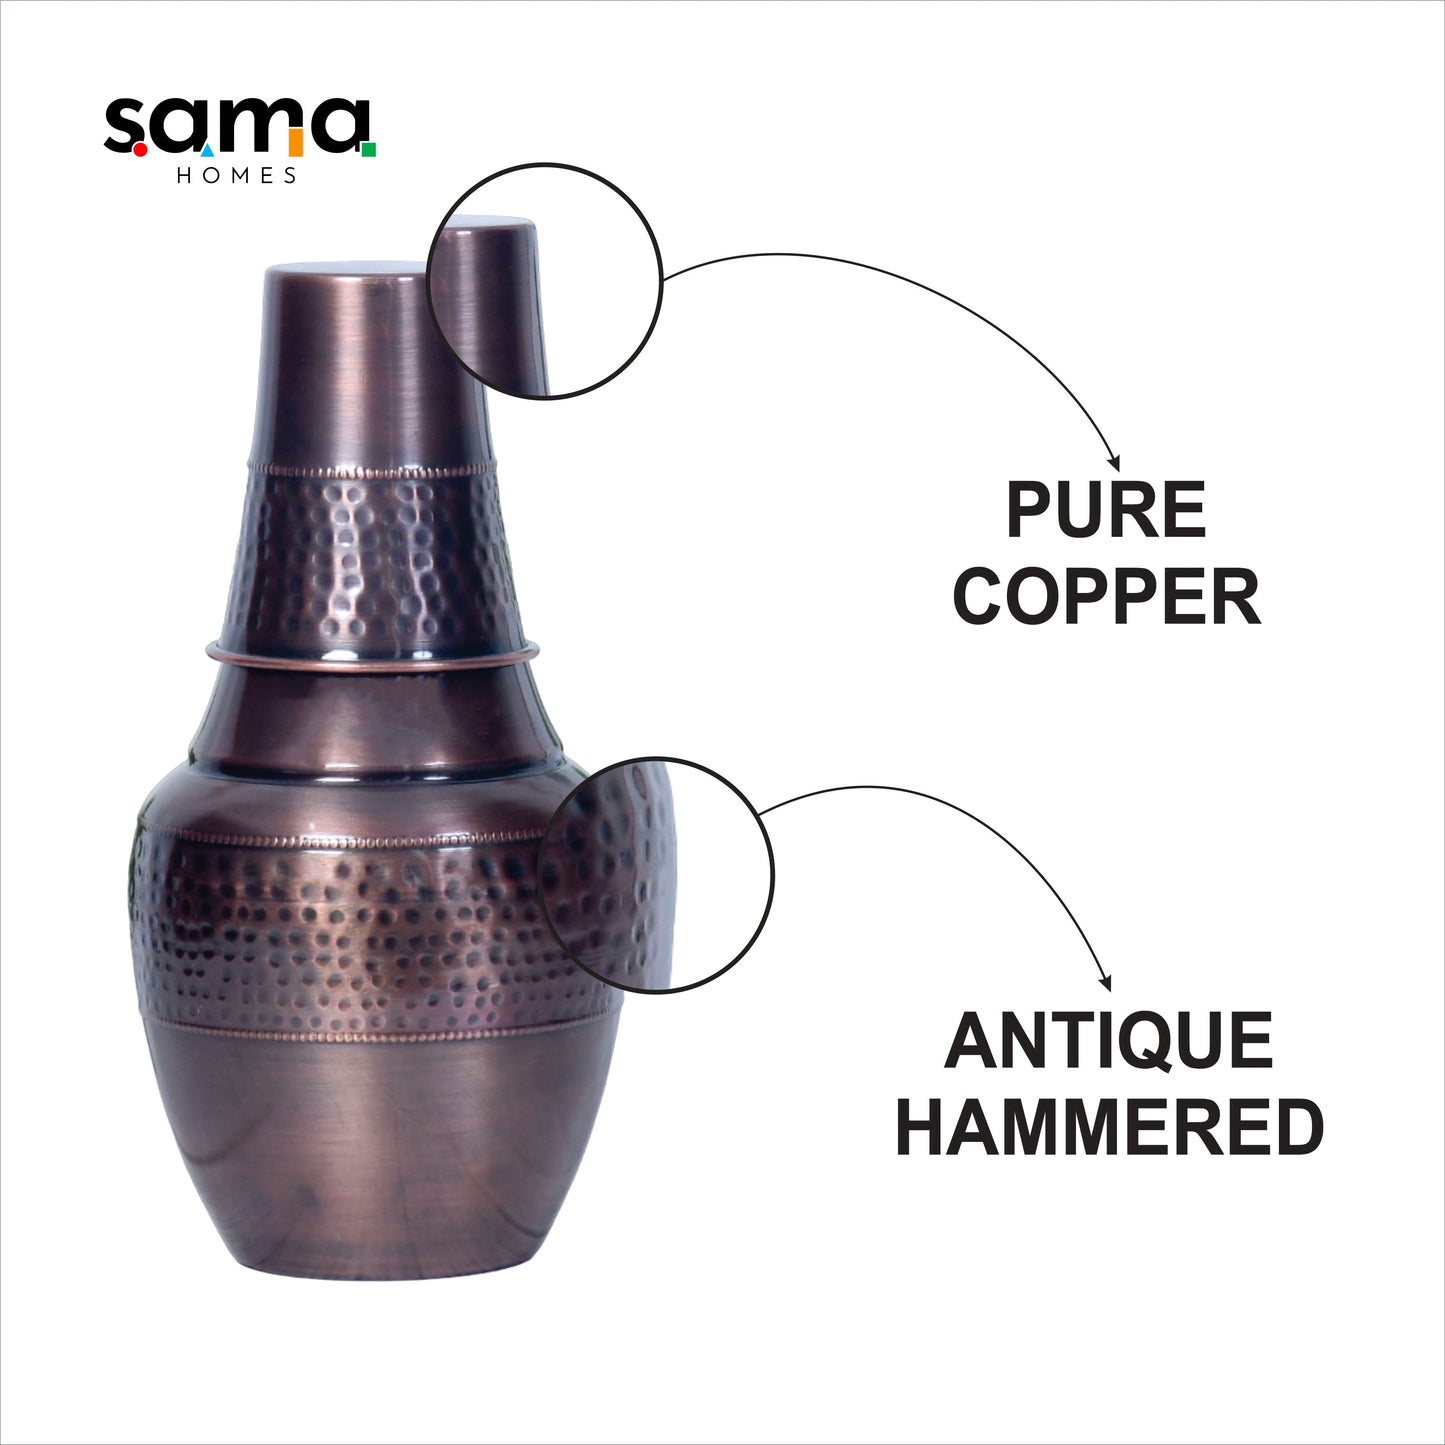 SAMA Homes - pure copper bedside venus jar antique hammered